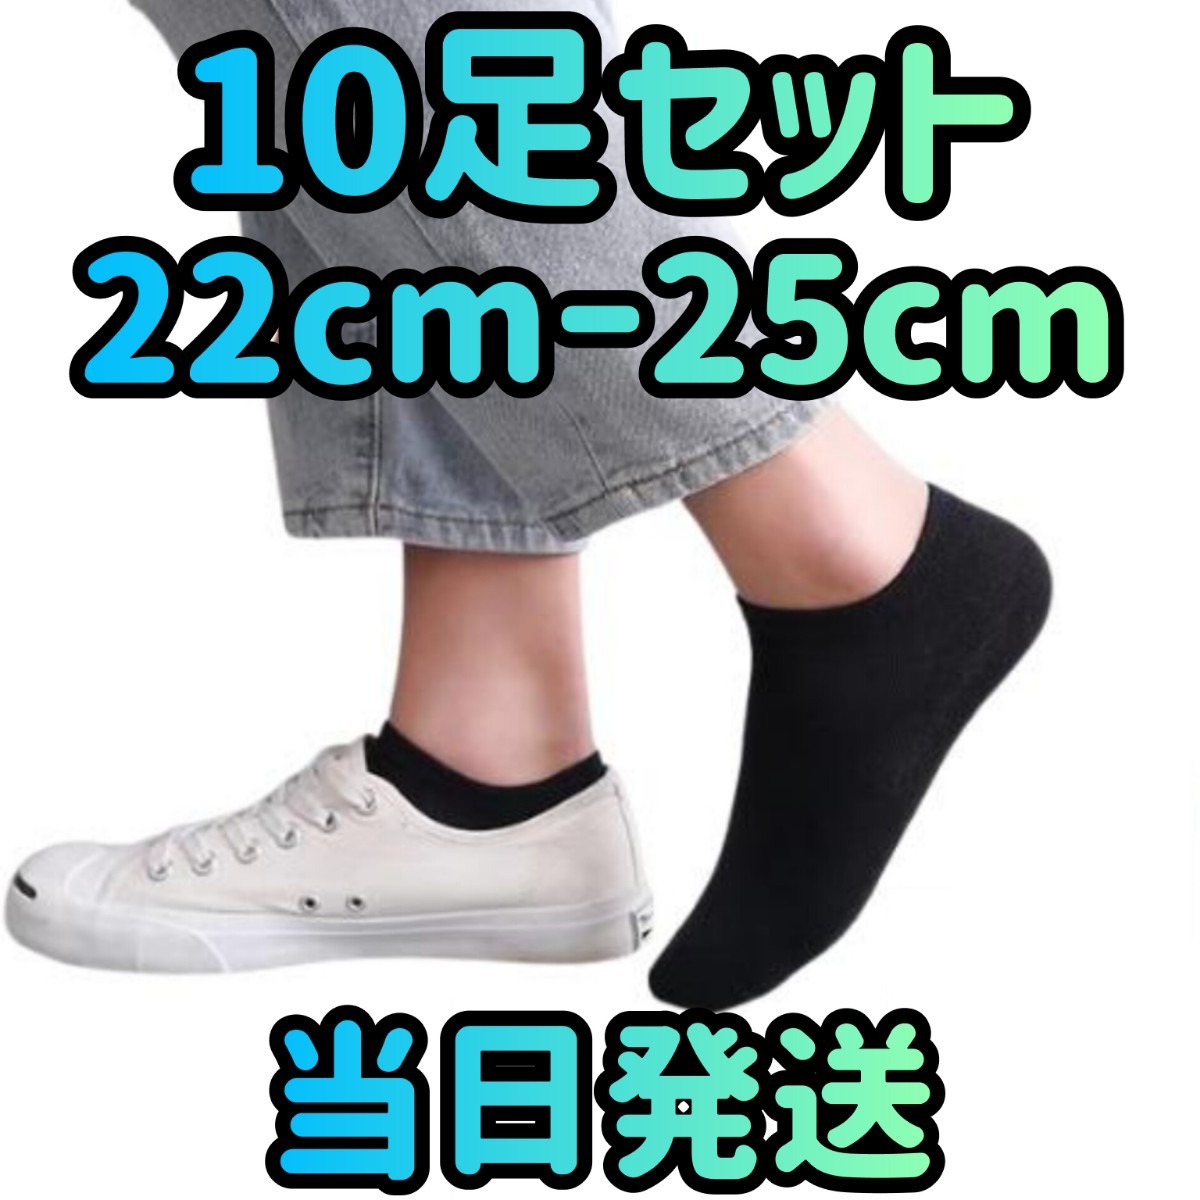 10 пар комплект 22cm~25cm женский носки черный носки короткие носки .... носки .... носки мода спортивные туфли 